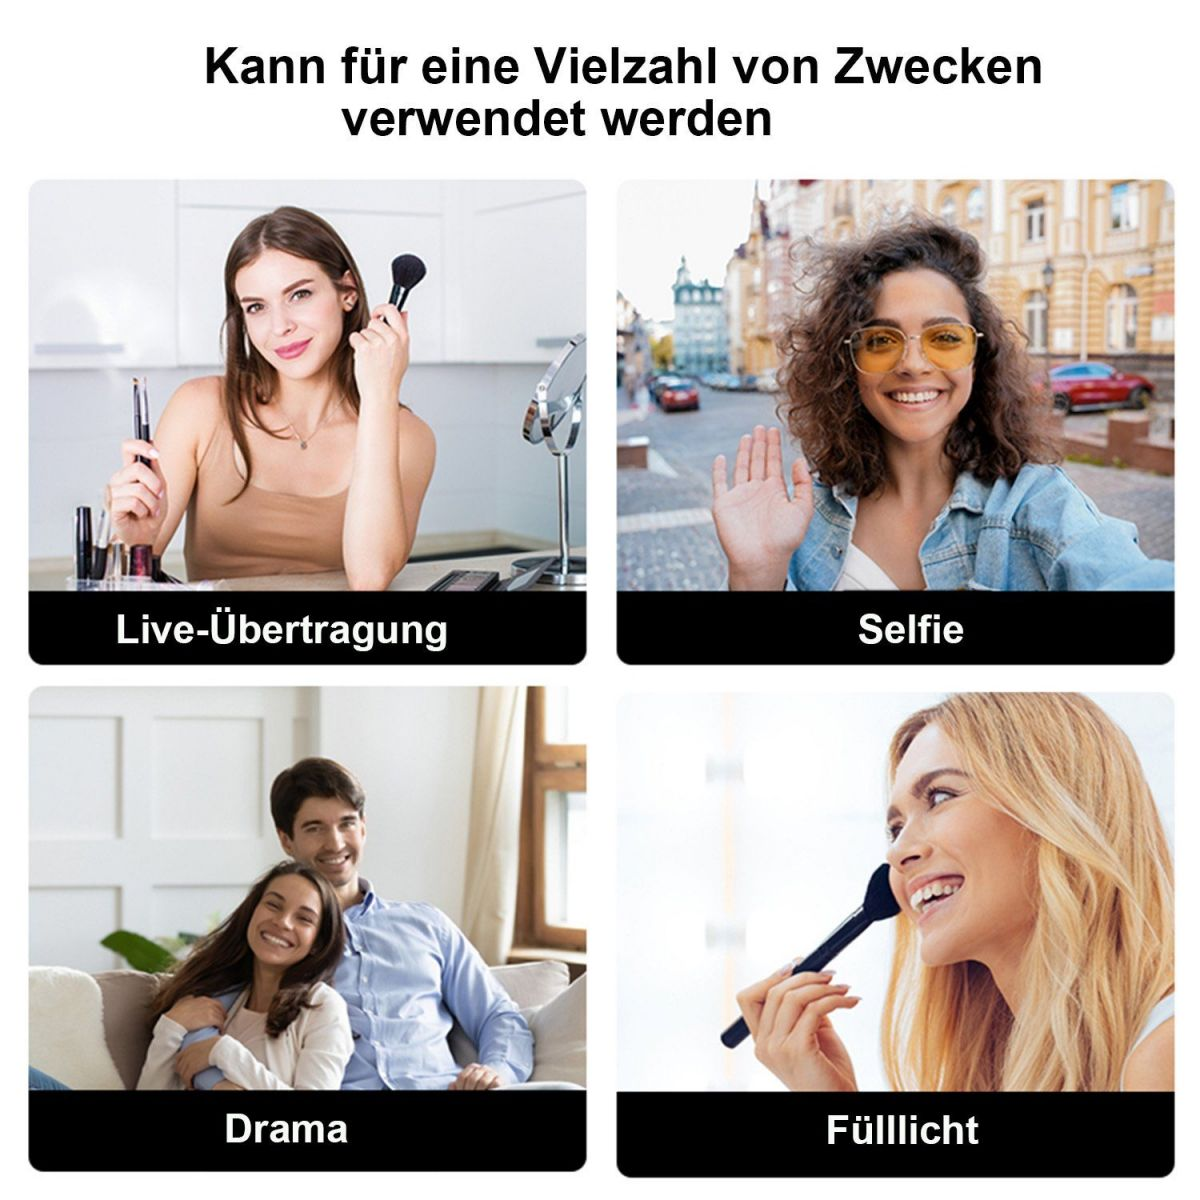 DIIDA Selfie-Stange, Bluetooth-Fernbedienung, Teleskop-Selfie-Stick, Selfie-Stick, rosa Stand-Stativ